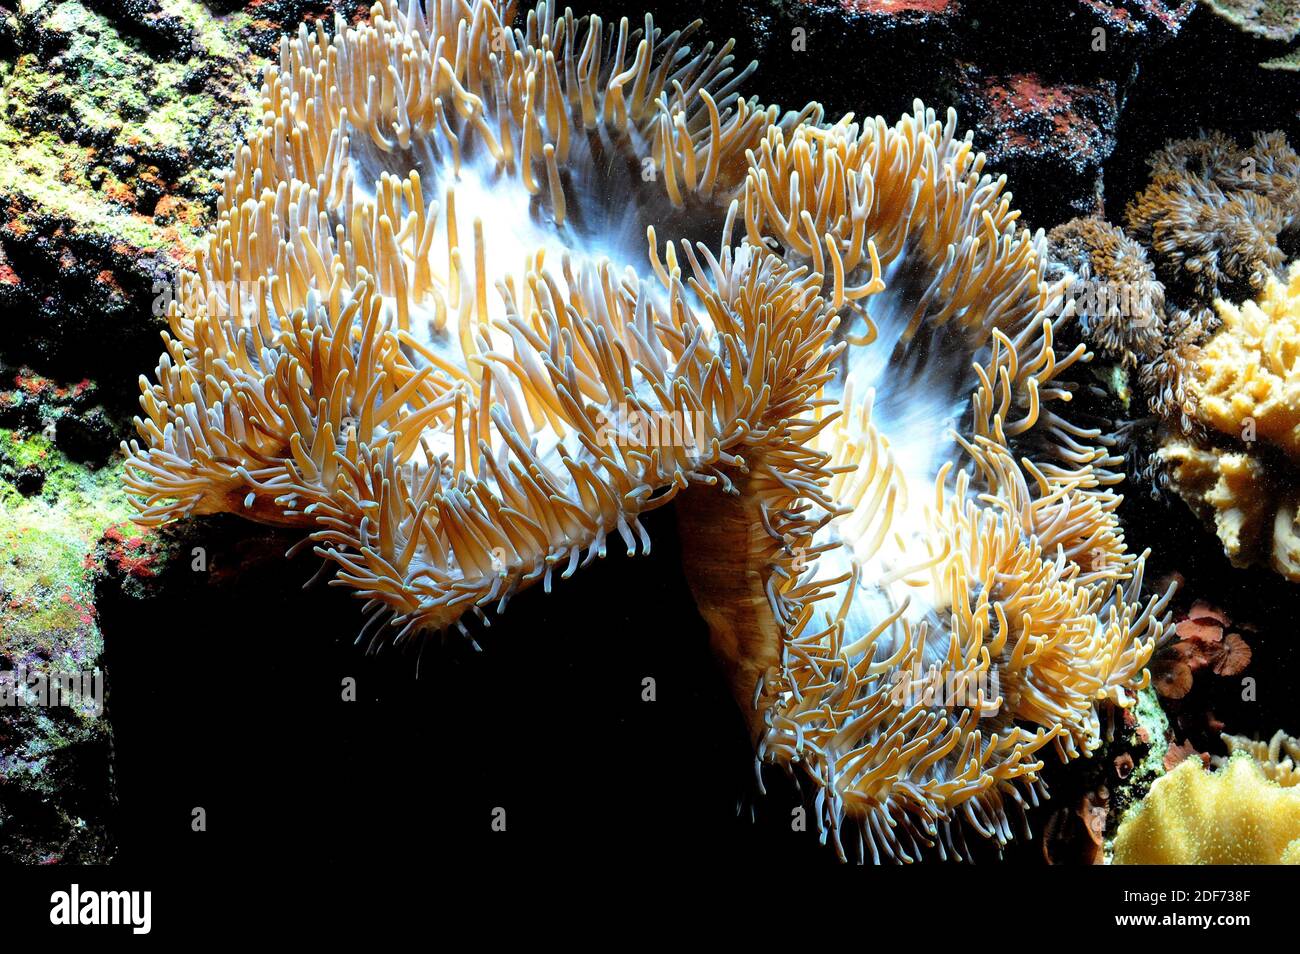 Elegance Coral (Catalaphyllia jardinei) ist eine steinerne Koralle. Stockfoto